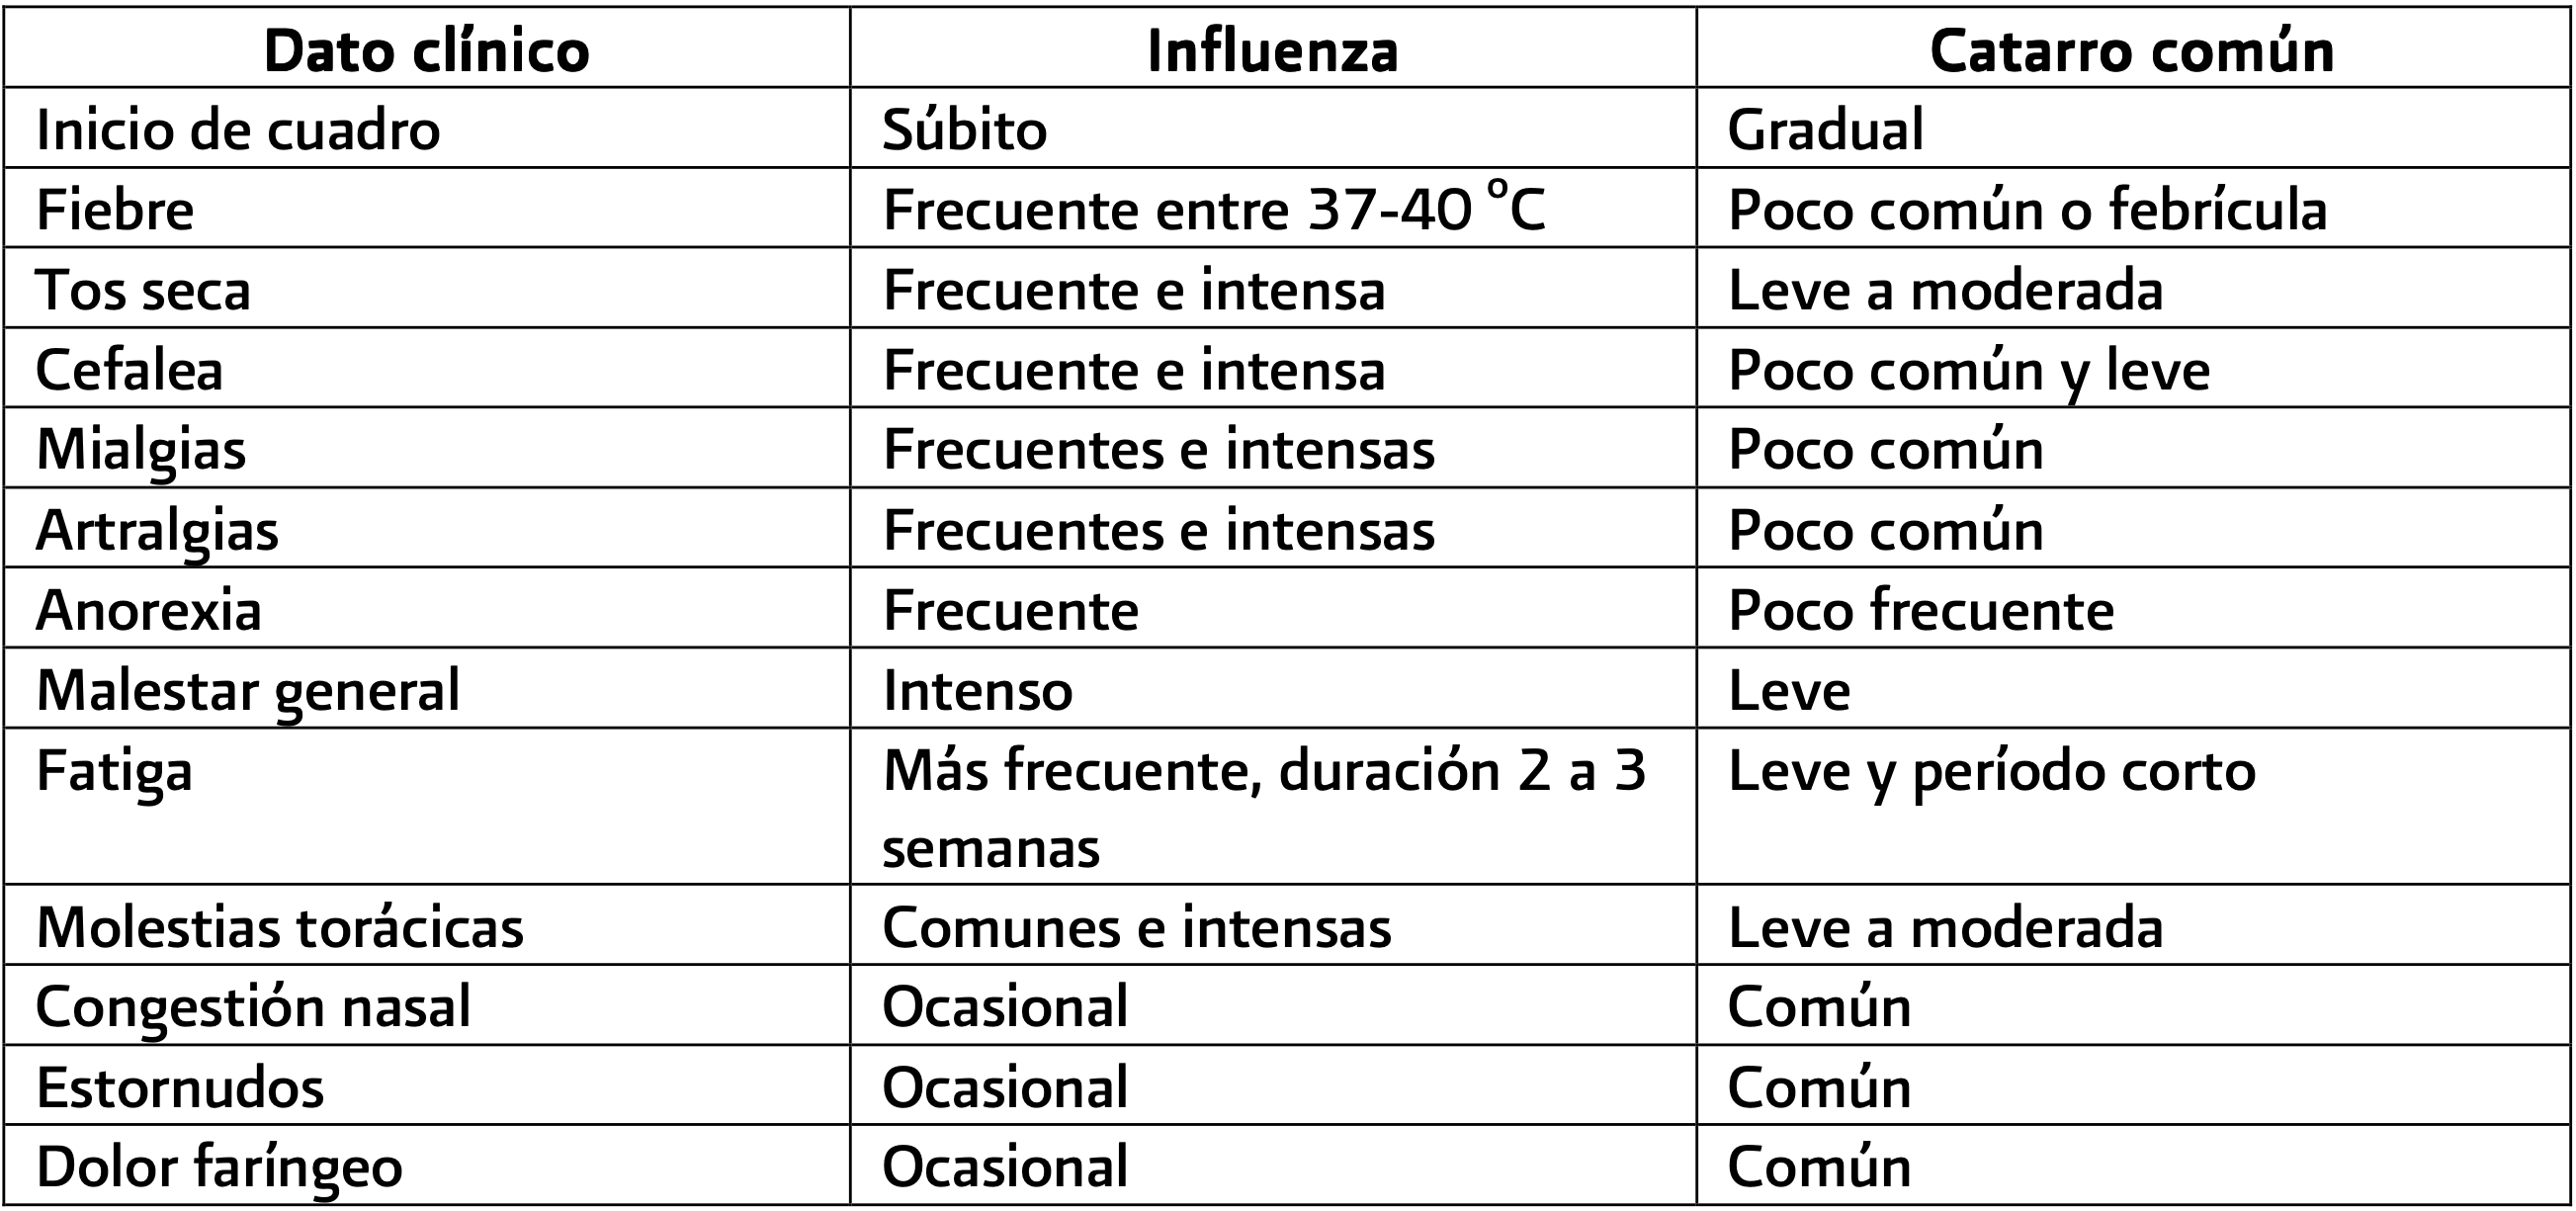 Influenza y Catarro